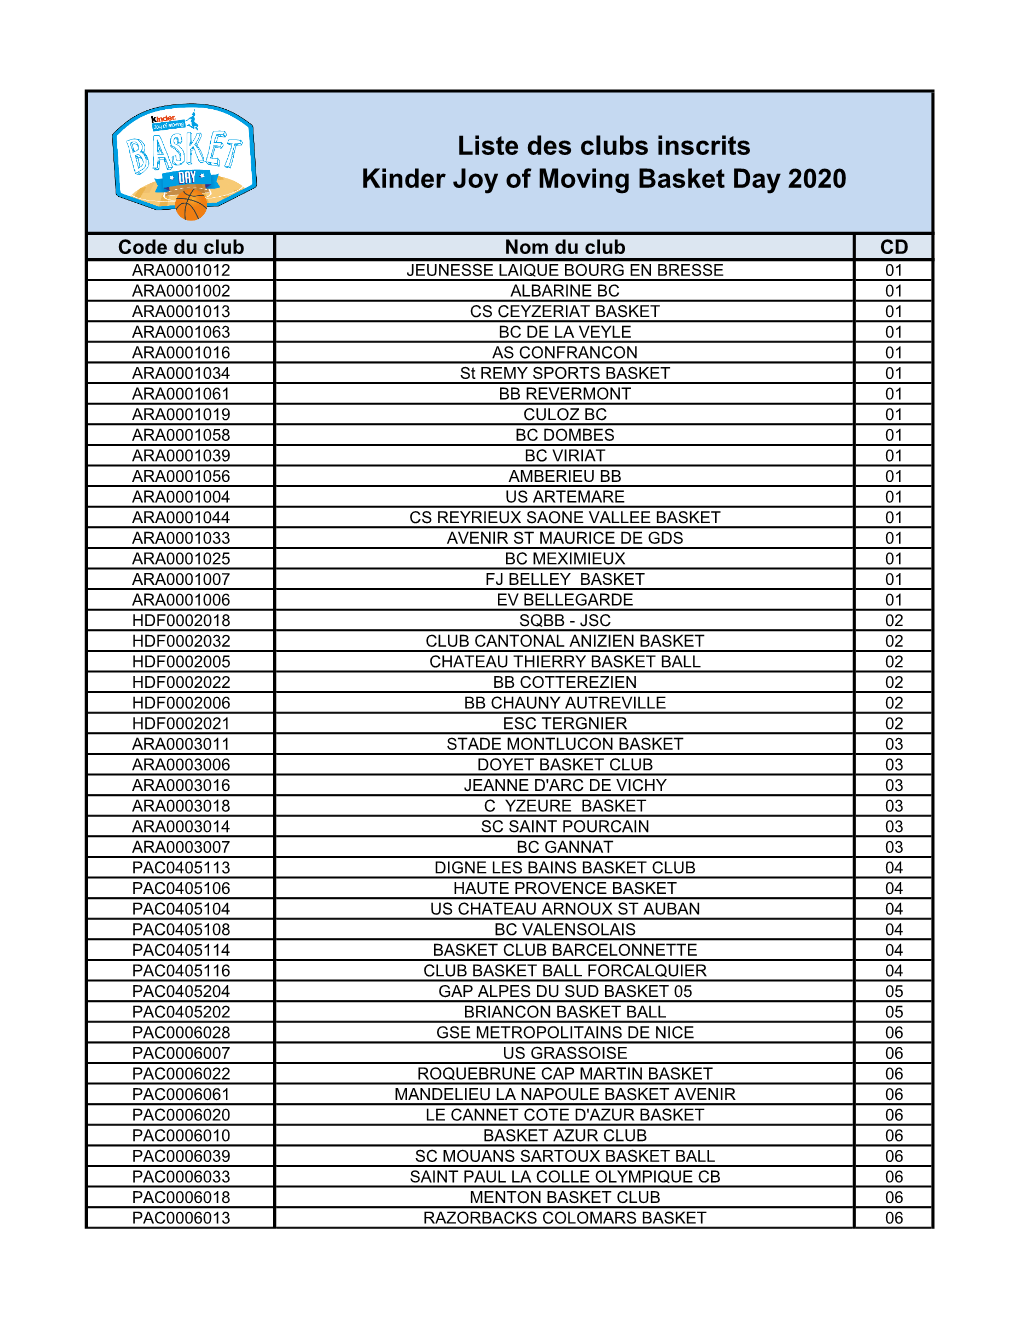 Liste Des Clubs Inscrits Kinder Joy of Moving Basket Day 2020